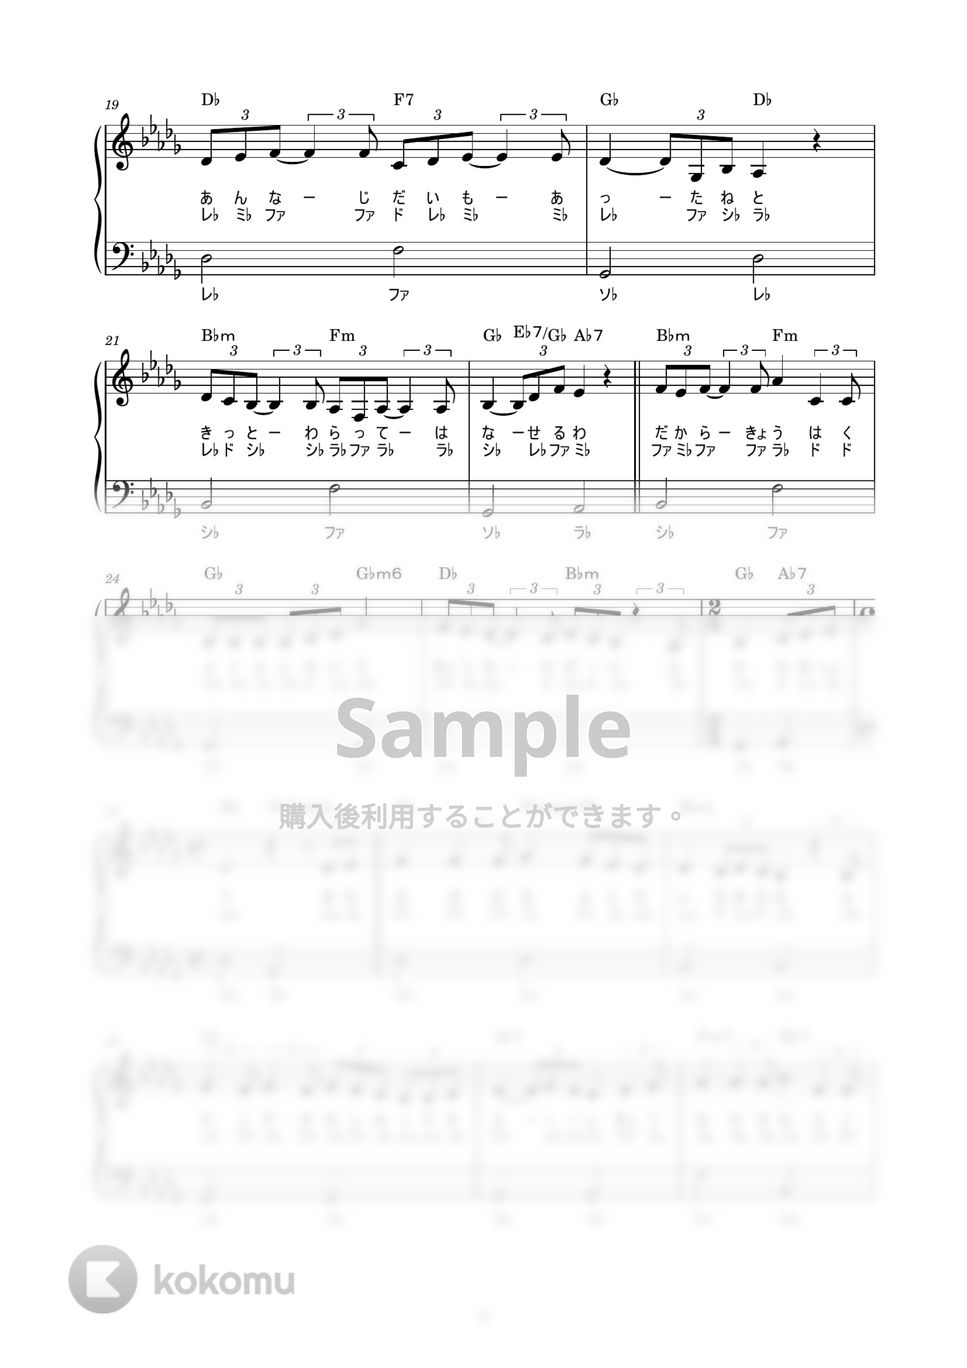 中島みゆき - 時代 (かんたん / 歌詞付き / ドレミ付き / 初心者) by piano.tokyo